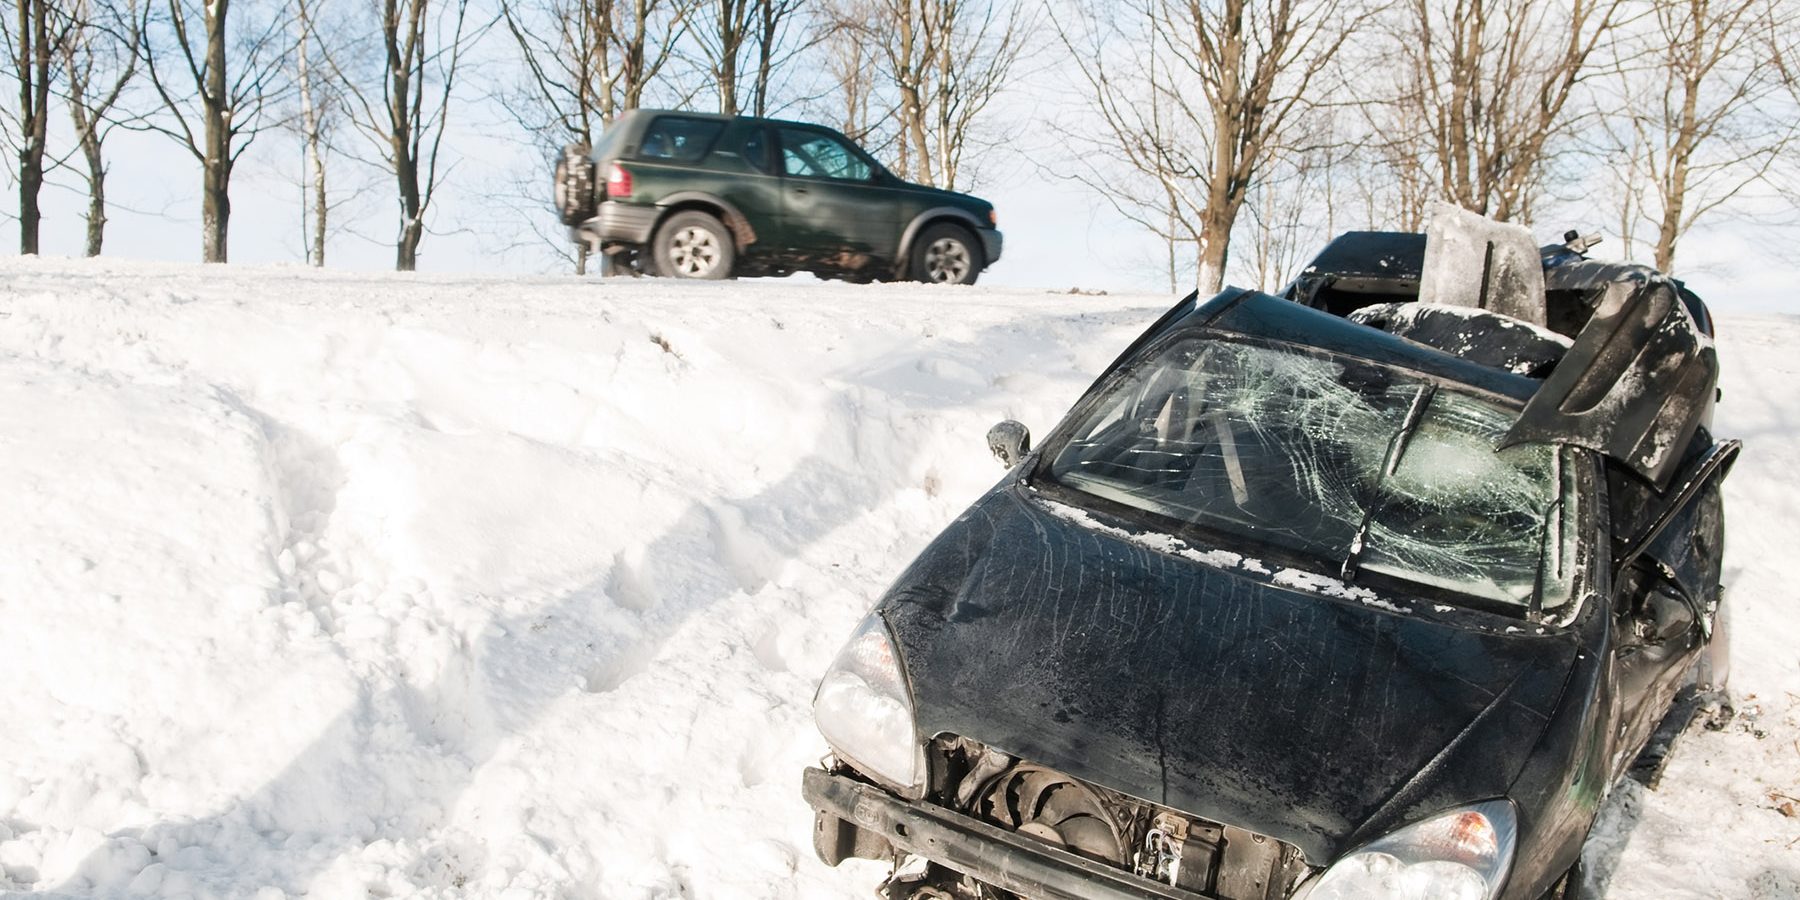 Crash Investigations London | car crash accident at snow road in winter | Crash Detectives Ltd